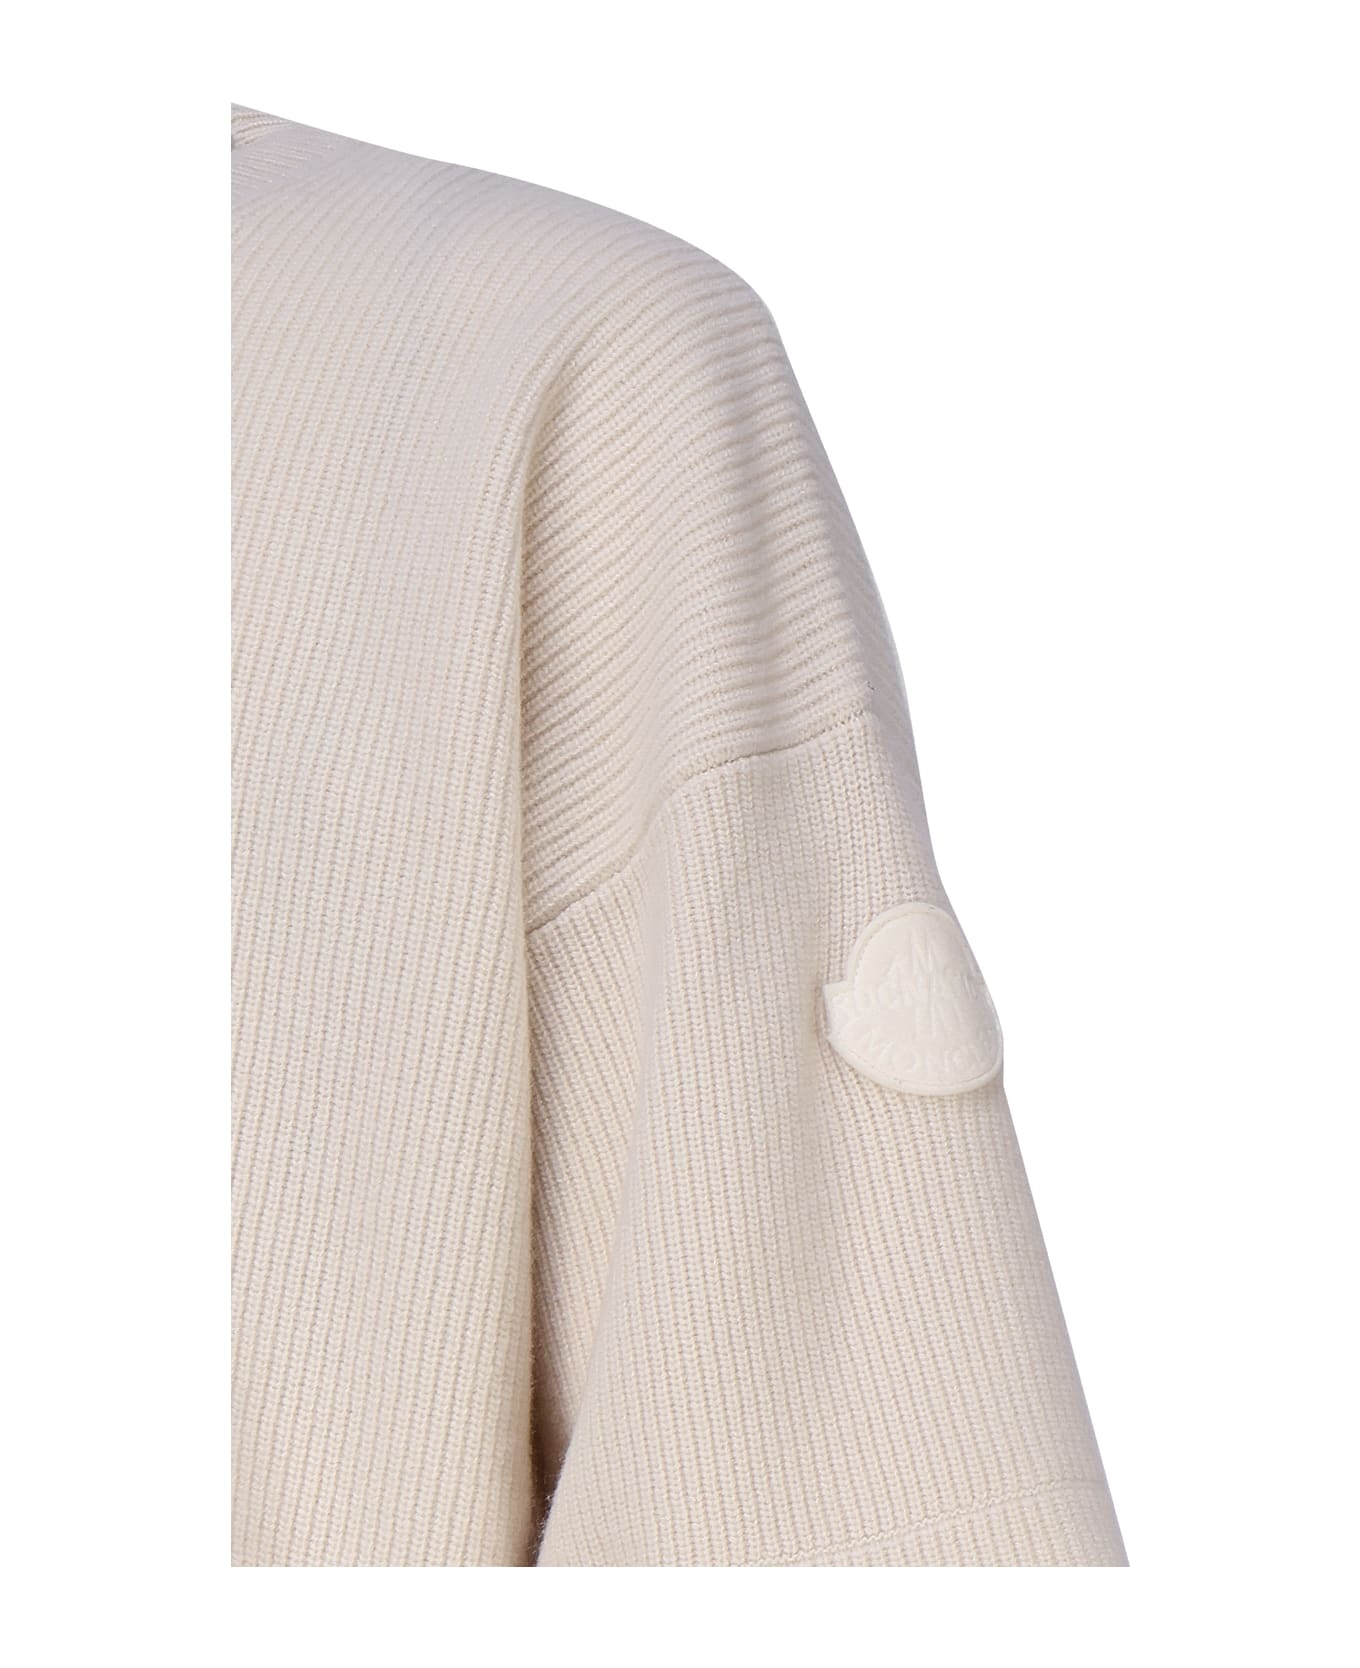 Moncler Genius Wool Sweater - Ivory